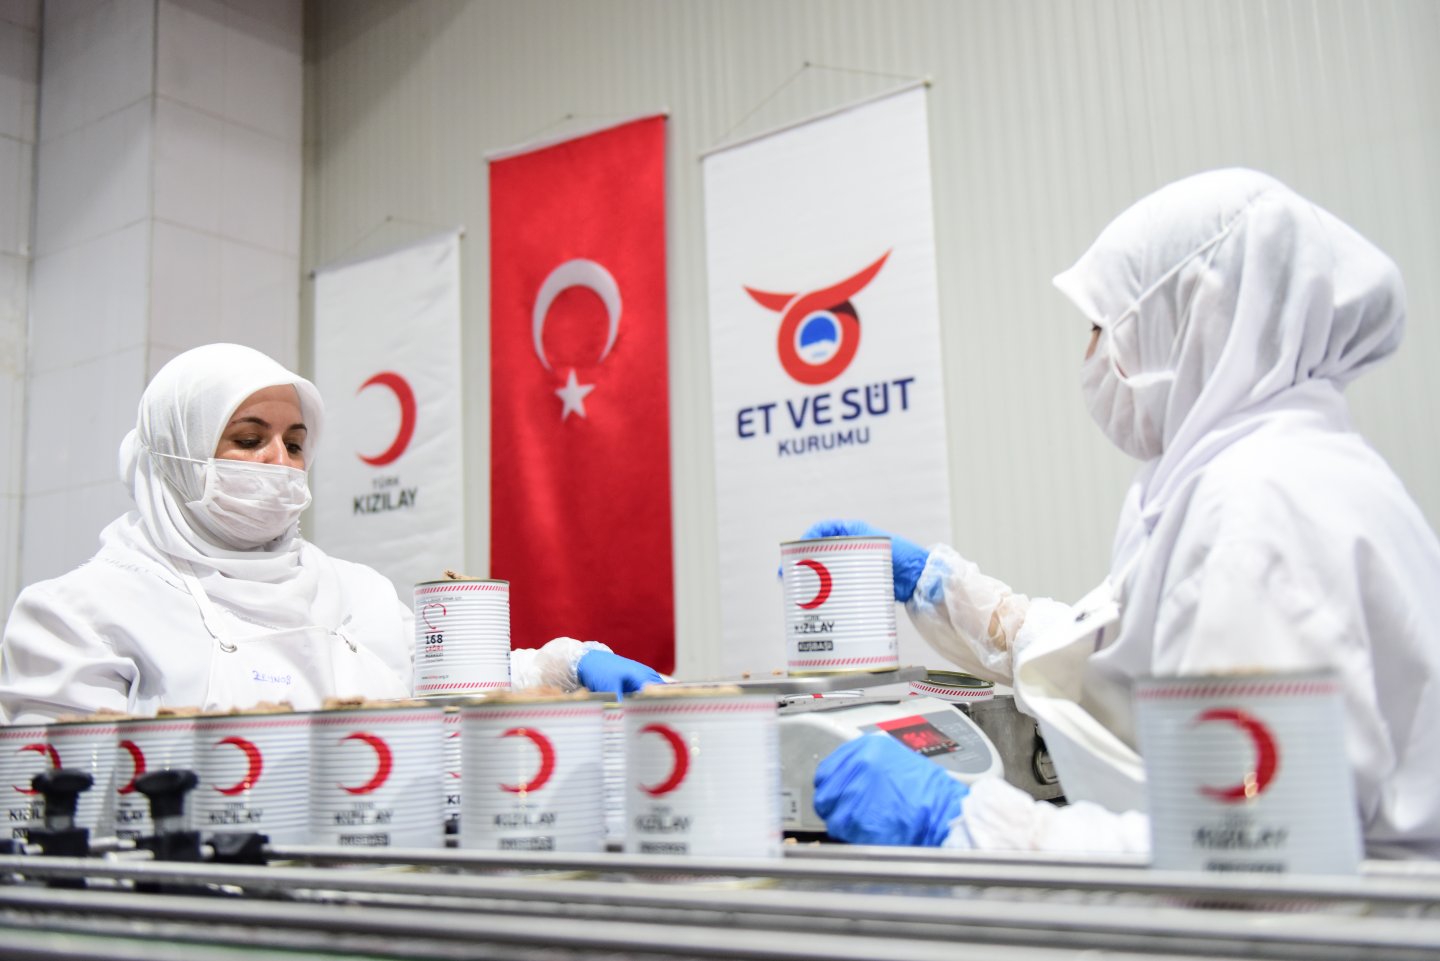 Türk Kızılay, Vekaletle Kurban Organizasyonunu Et ve Süt Kurumu İş